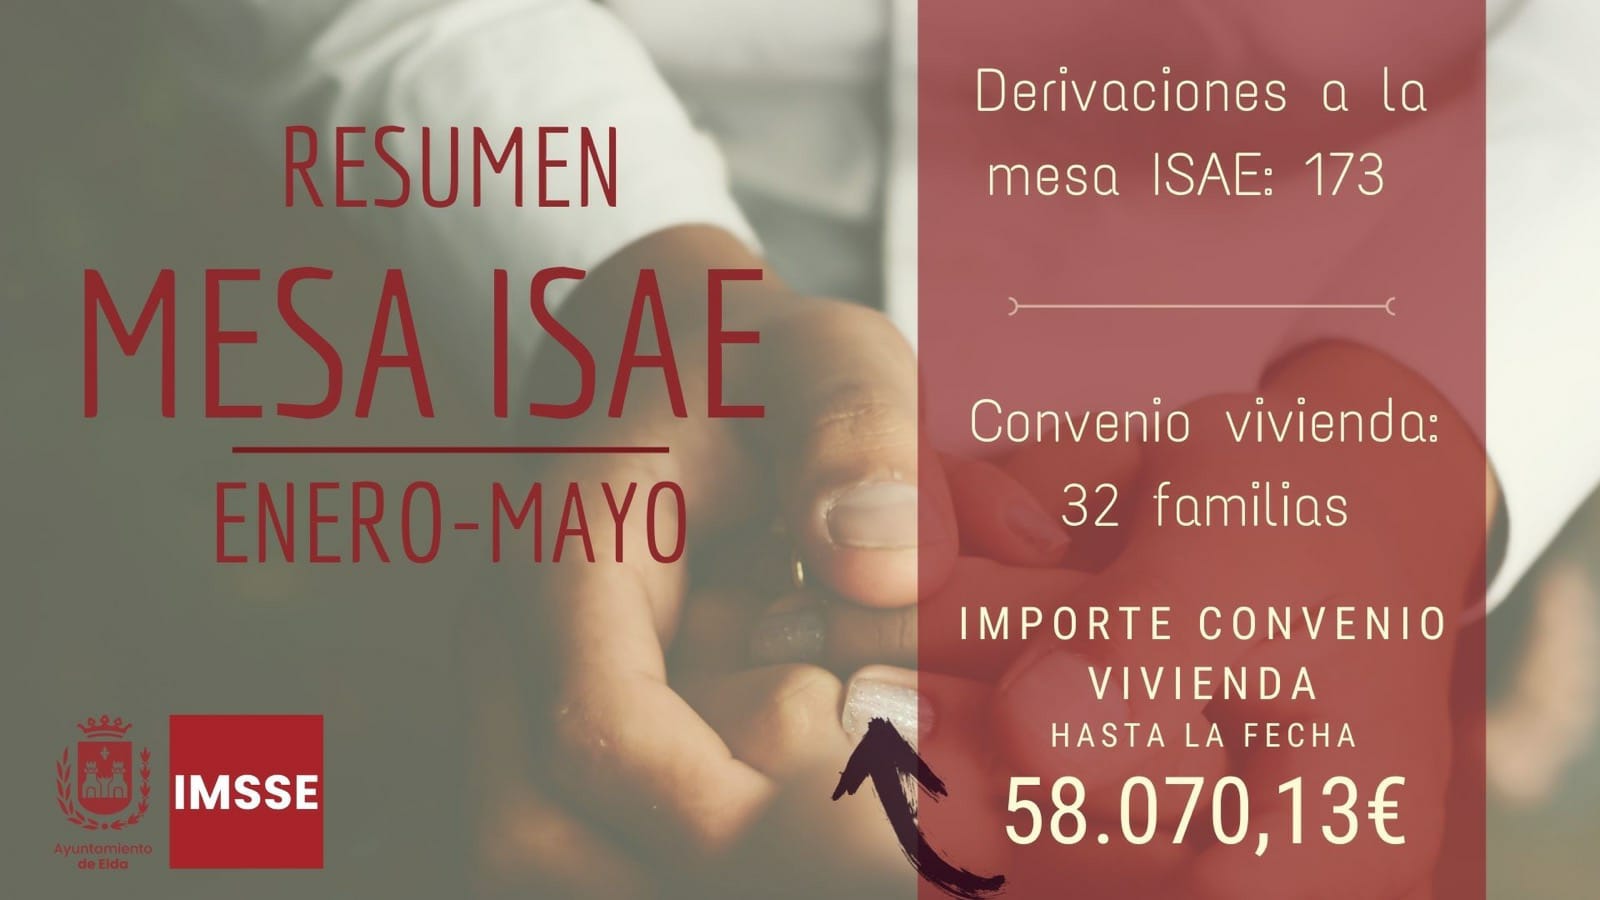 El Ayuntamiento de Elda ha atendido a más de 200 familias vulnerables durante los cinco primeros meses del año a través de la Mesa ISAE